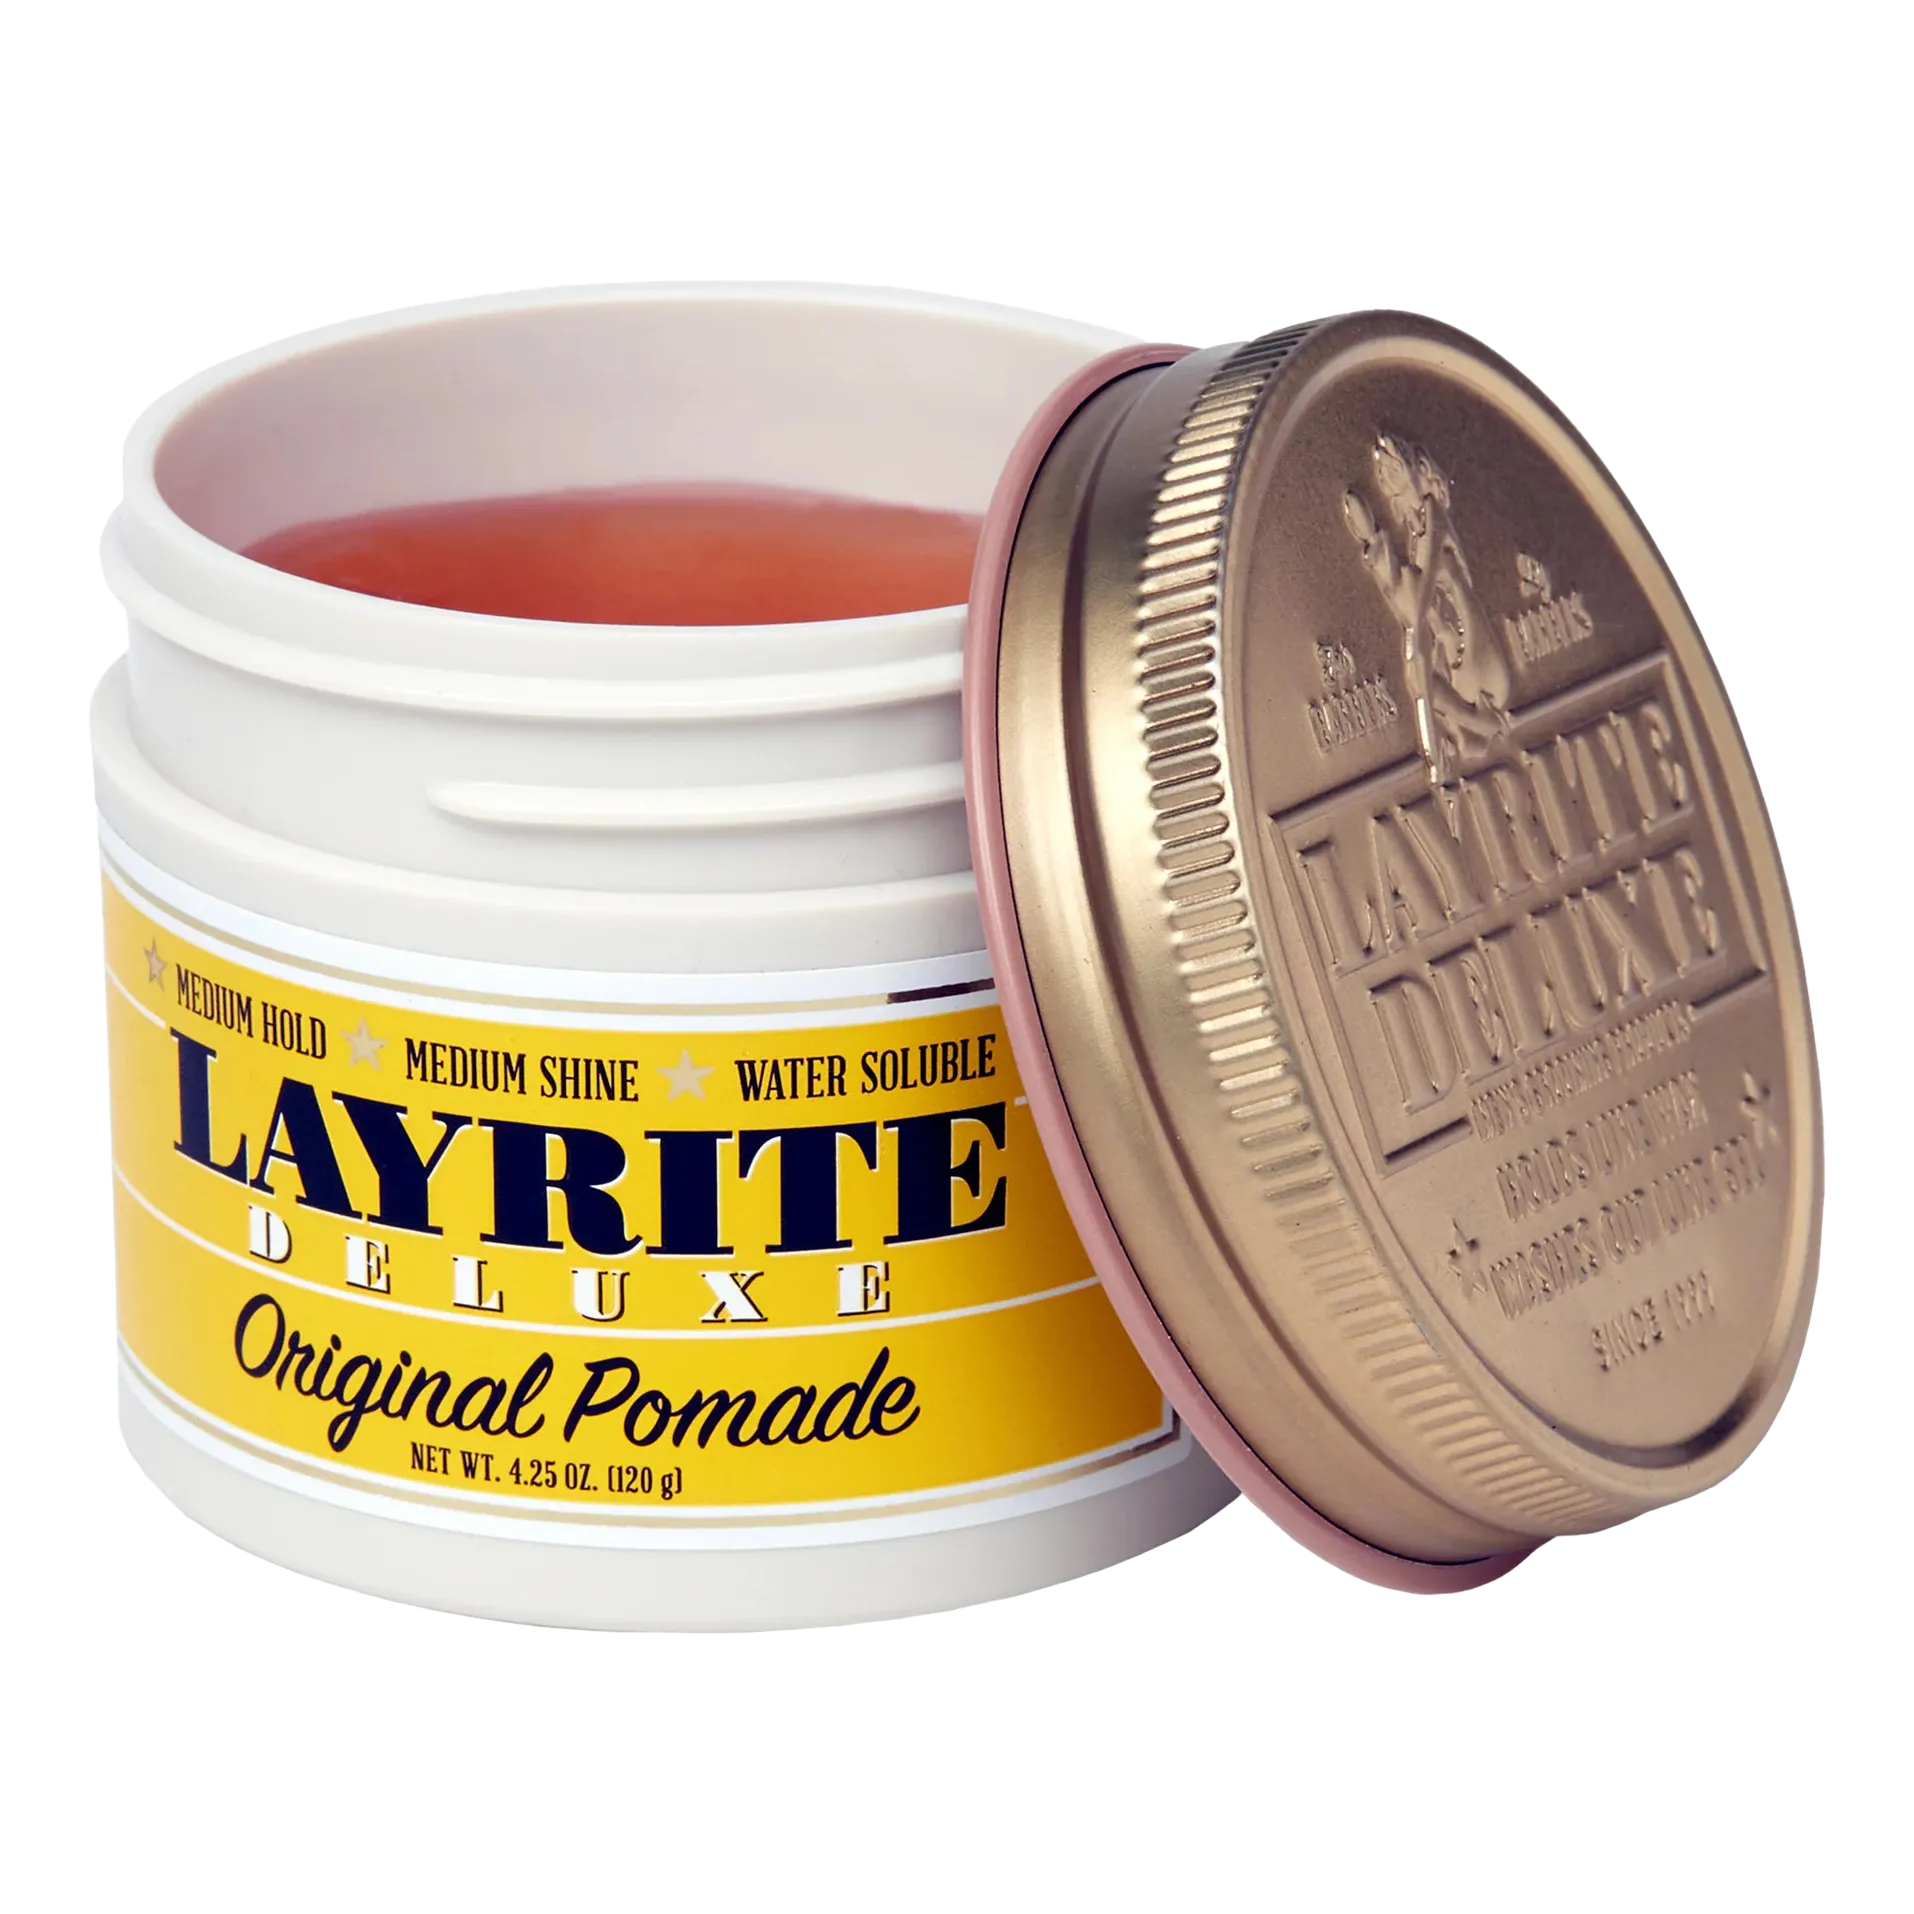 Layrite Original Pomade 